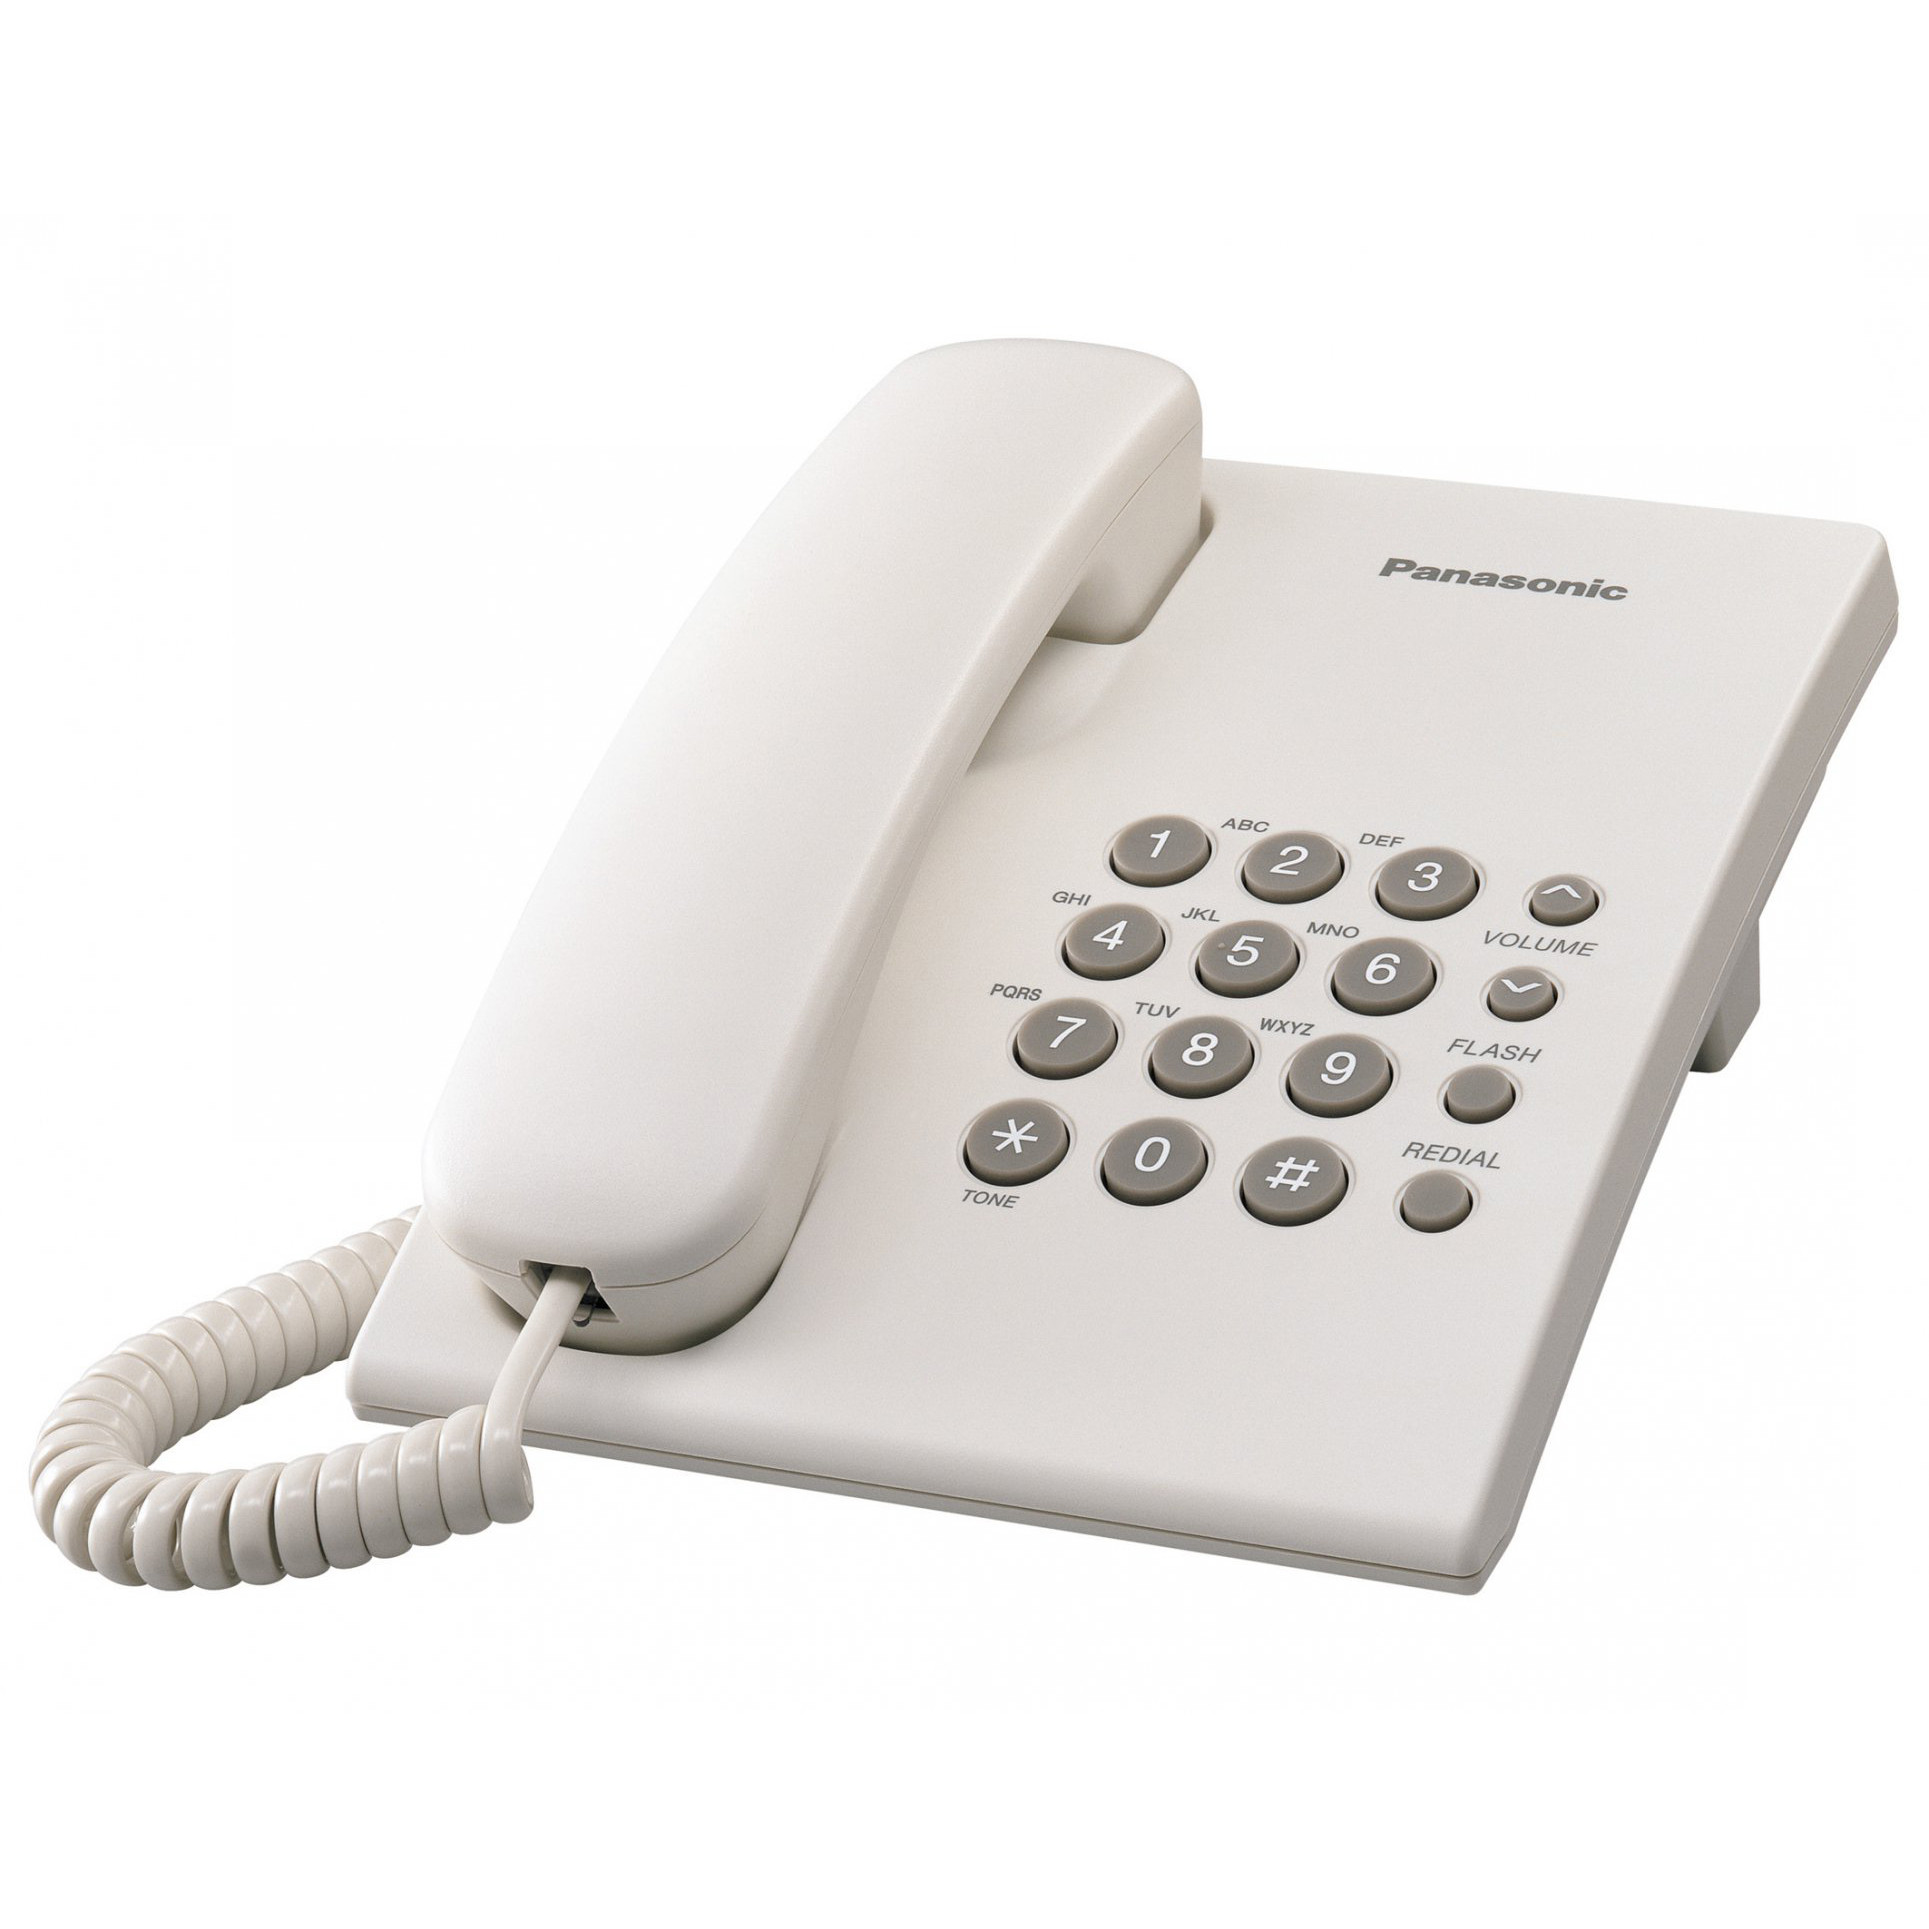 Điện thoại cố định Panasonic KX-TS 500 (Đen, trắng, xanh, đỏ, xám) -Hàng Chính Hãng